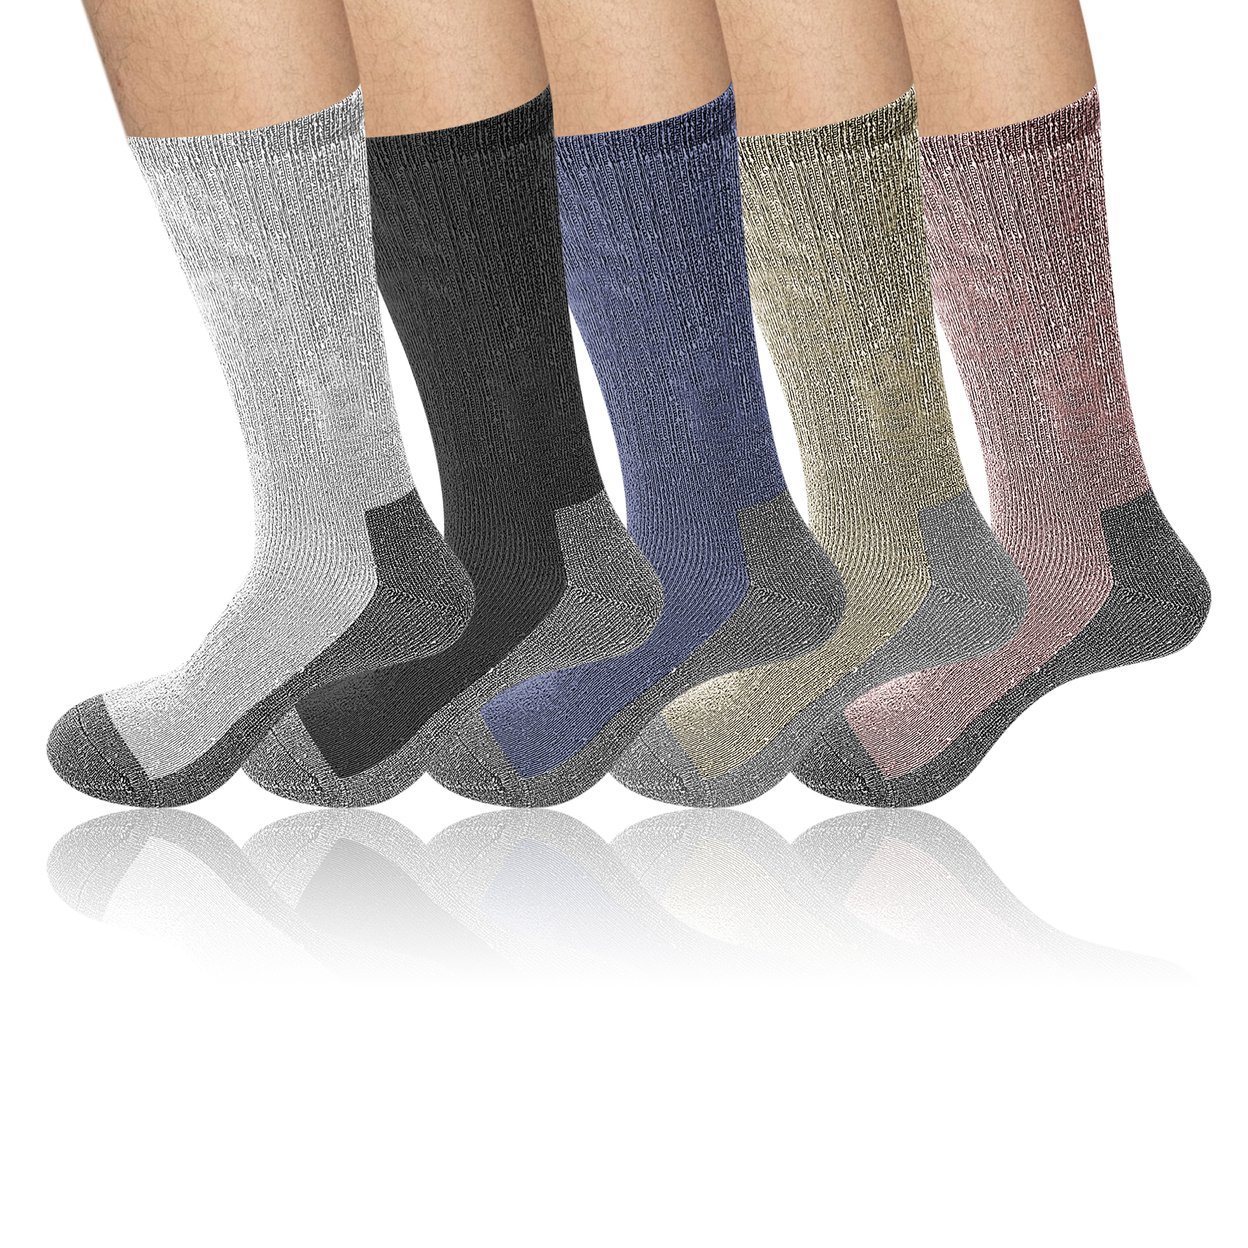 2-Pairs: Men's Warm Thick Merino Lamb Wool Socks